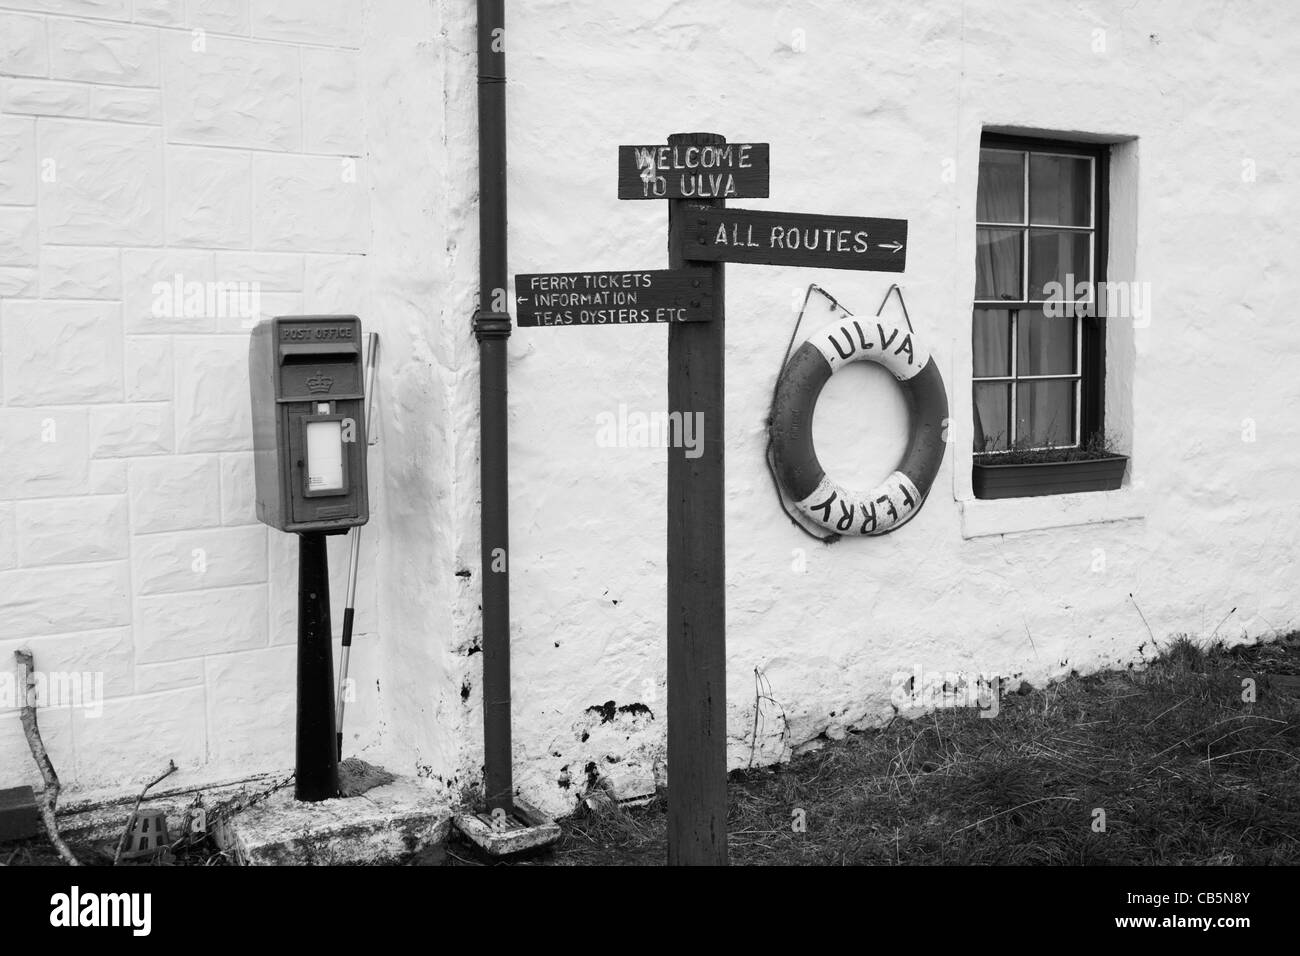 Detail der Anzeichen für Wanderrouten rund um die Insel Ulva, Isle of Mull, Schottland. Stockfoto